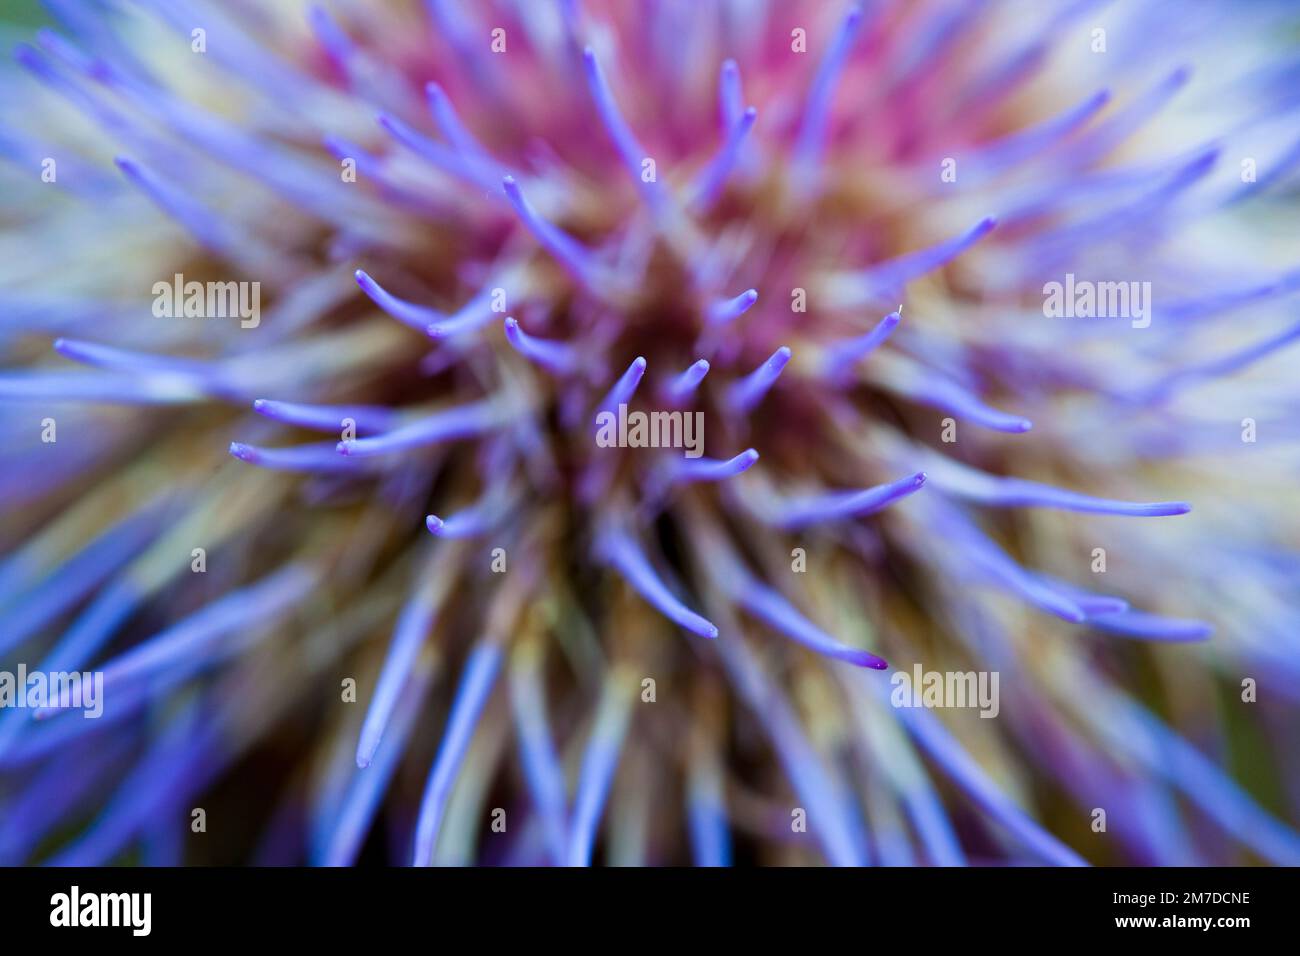 Un dettaglio molto ravvicinato della testa fiorente del cardone, Cynara cardunculus che shwoing punte viola profonde sul carciofo come fiore. Foto Stock